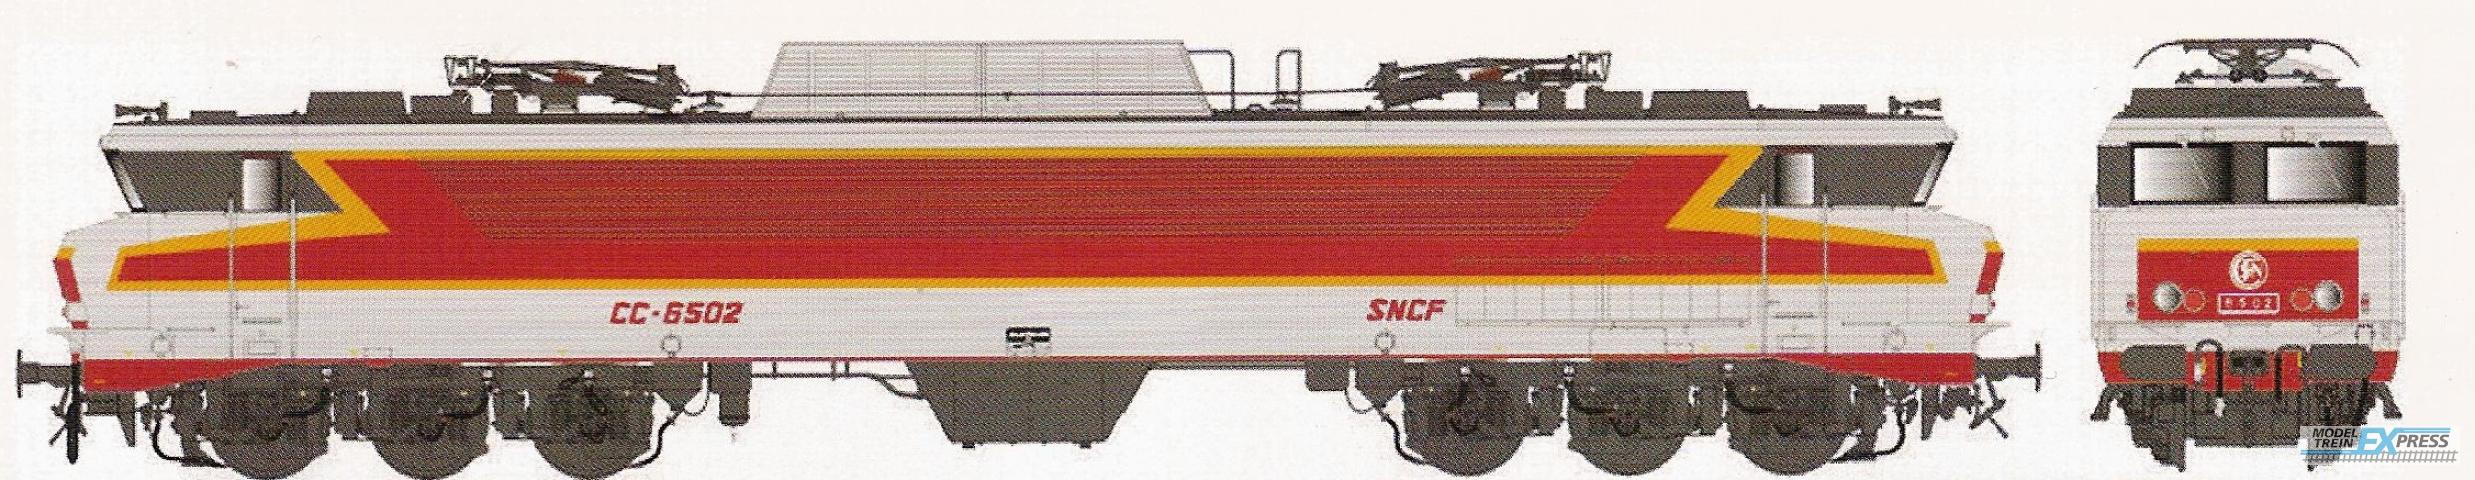 LS Models 10320S CC 6502, metaalgrijs/rood/oranje, TEE, platen, Beffara logo, zuidoost  /  Ep. IV  /  SNCF  /  HO  /  DC SOUND  /  1 P.